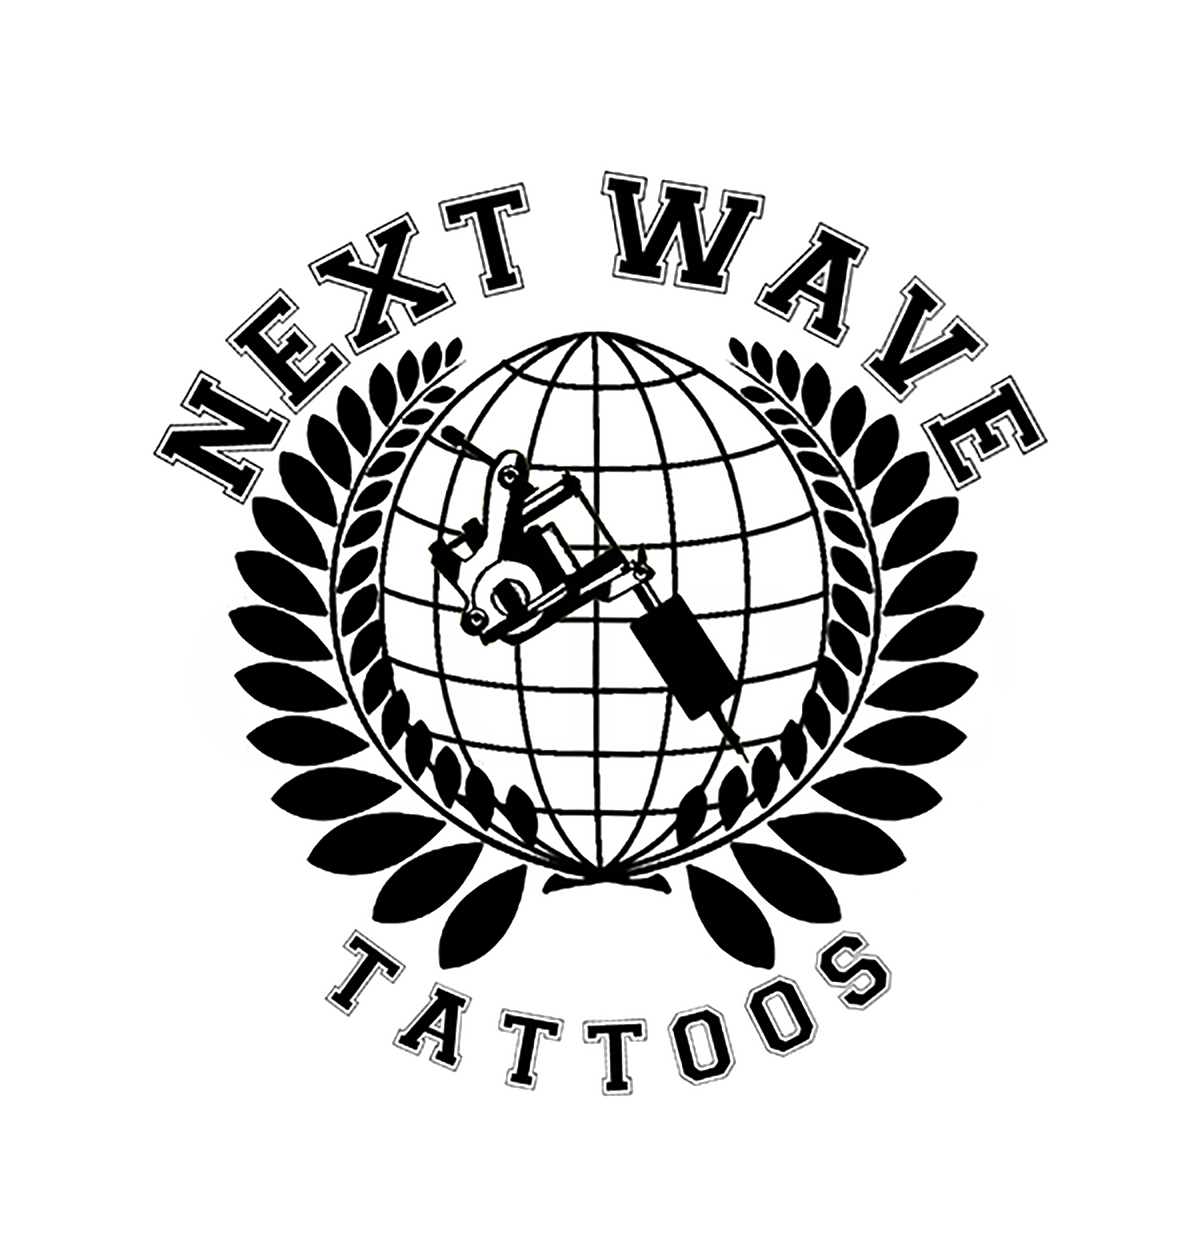 Next wave tattoo logo all black